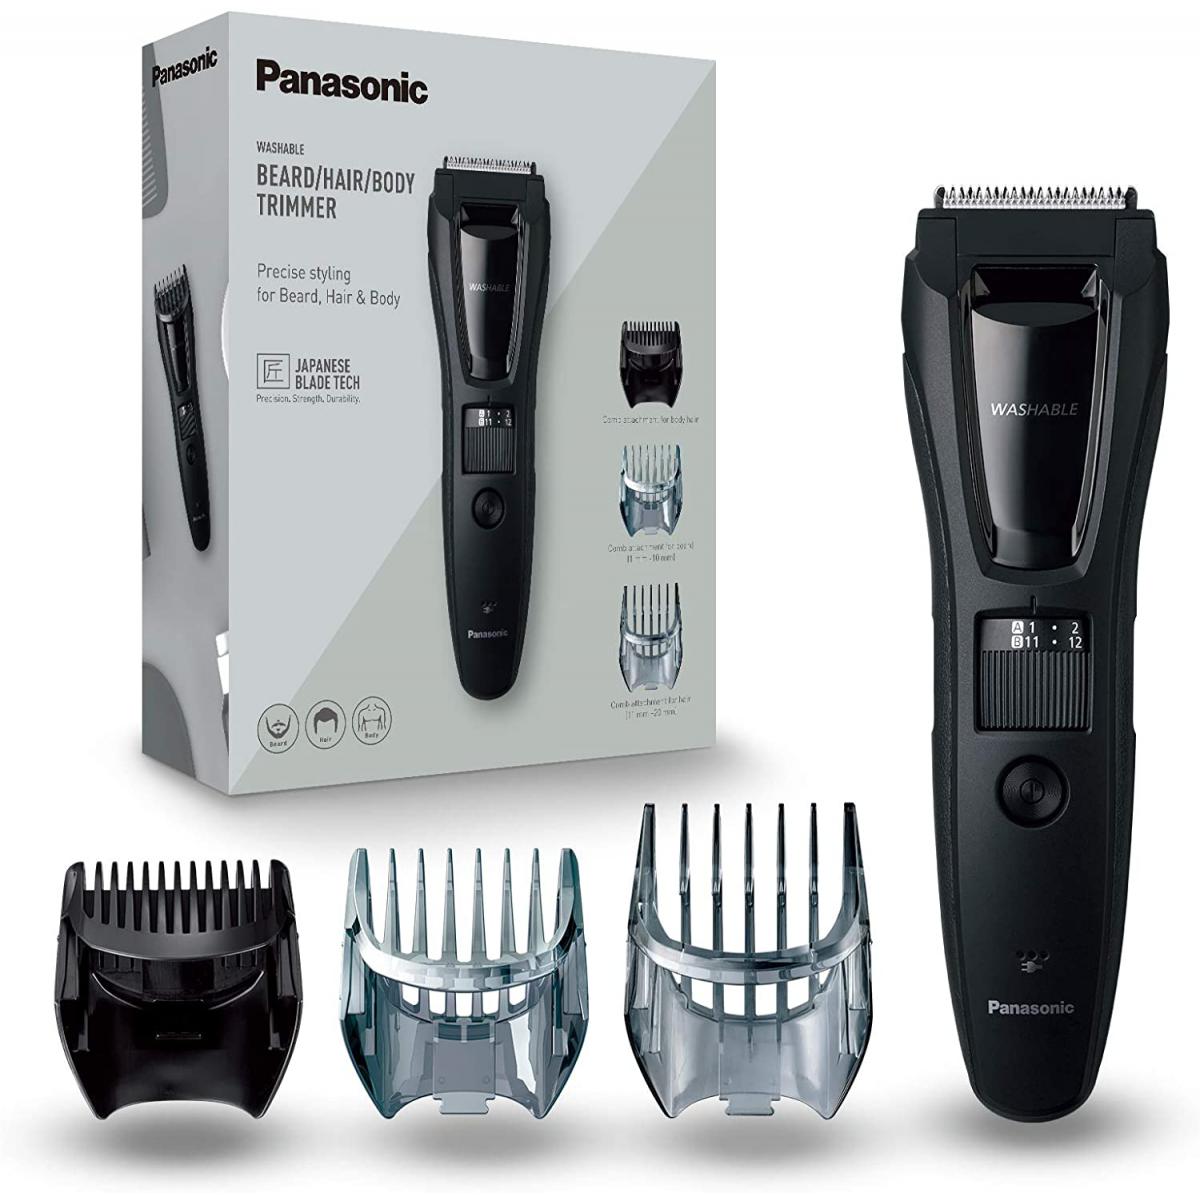 Panasonic tondeuse électrique pour homme corps barbe et tête 3 en 1 rechargeable étanche noir